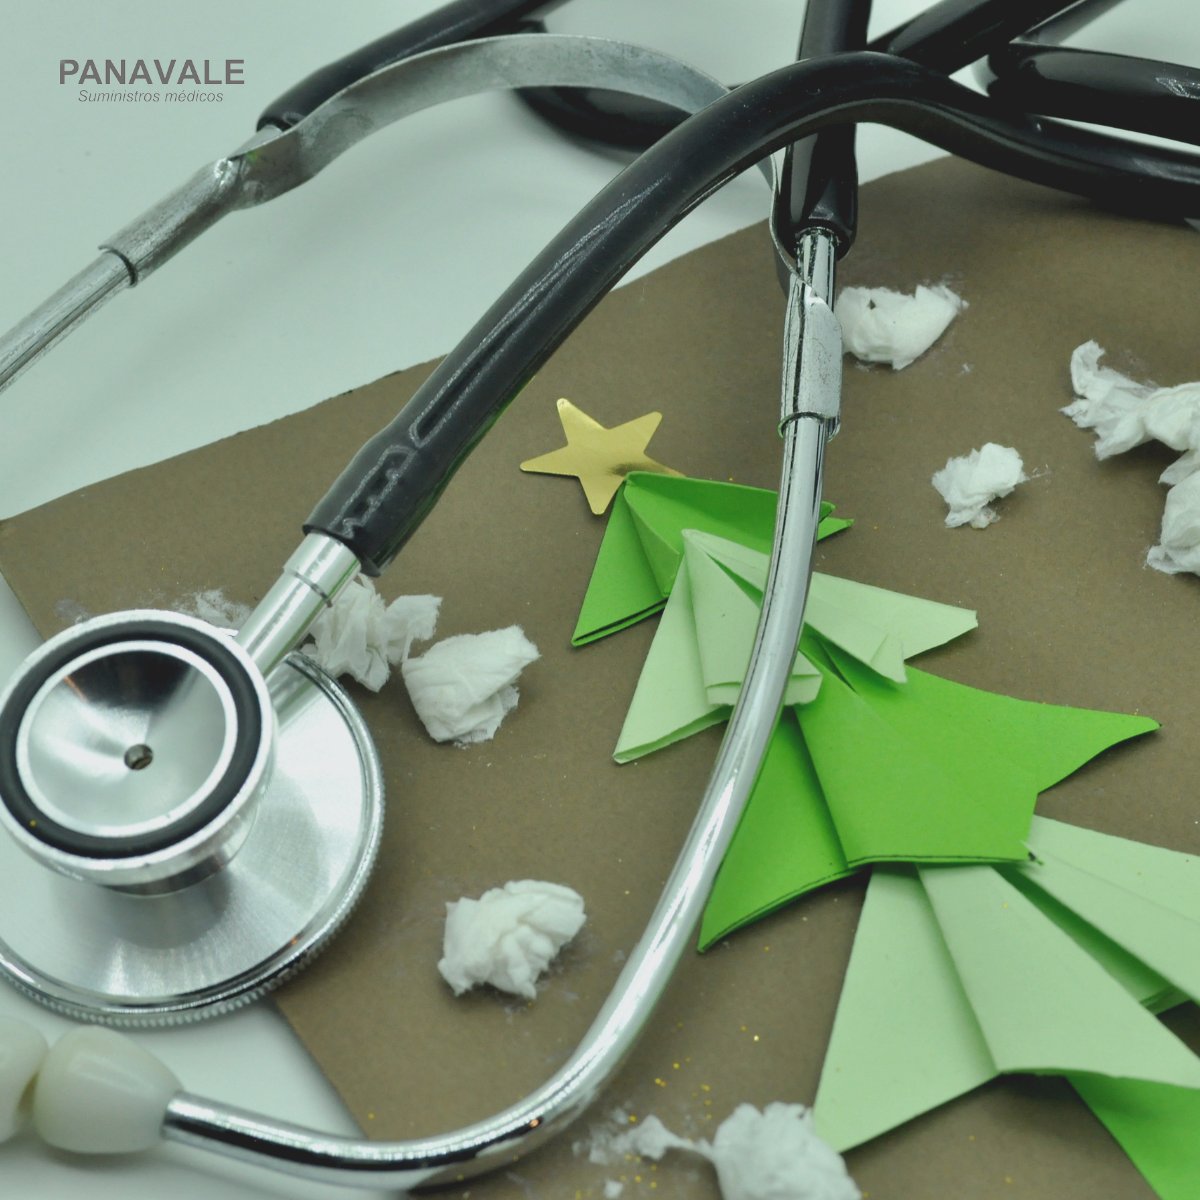 🎄 ¡Todo el equipo de Panavale os desea unas Felices Fiestas!

Esperamos que las disfrutéis al máximo, rodeados de todas las personas a las que queréis 😊🌟

#Navidad #FelizNavidad #FelicesFiestas #Panavale #ProductosMedicos #SuministrosMedicos